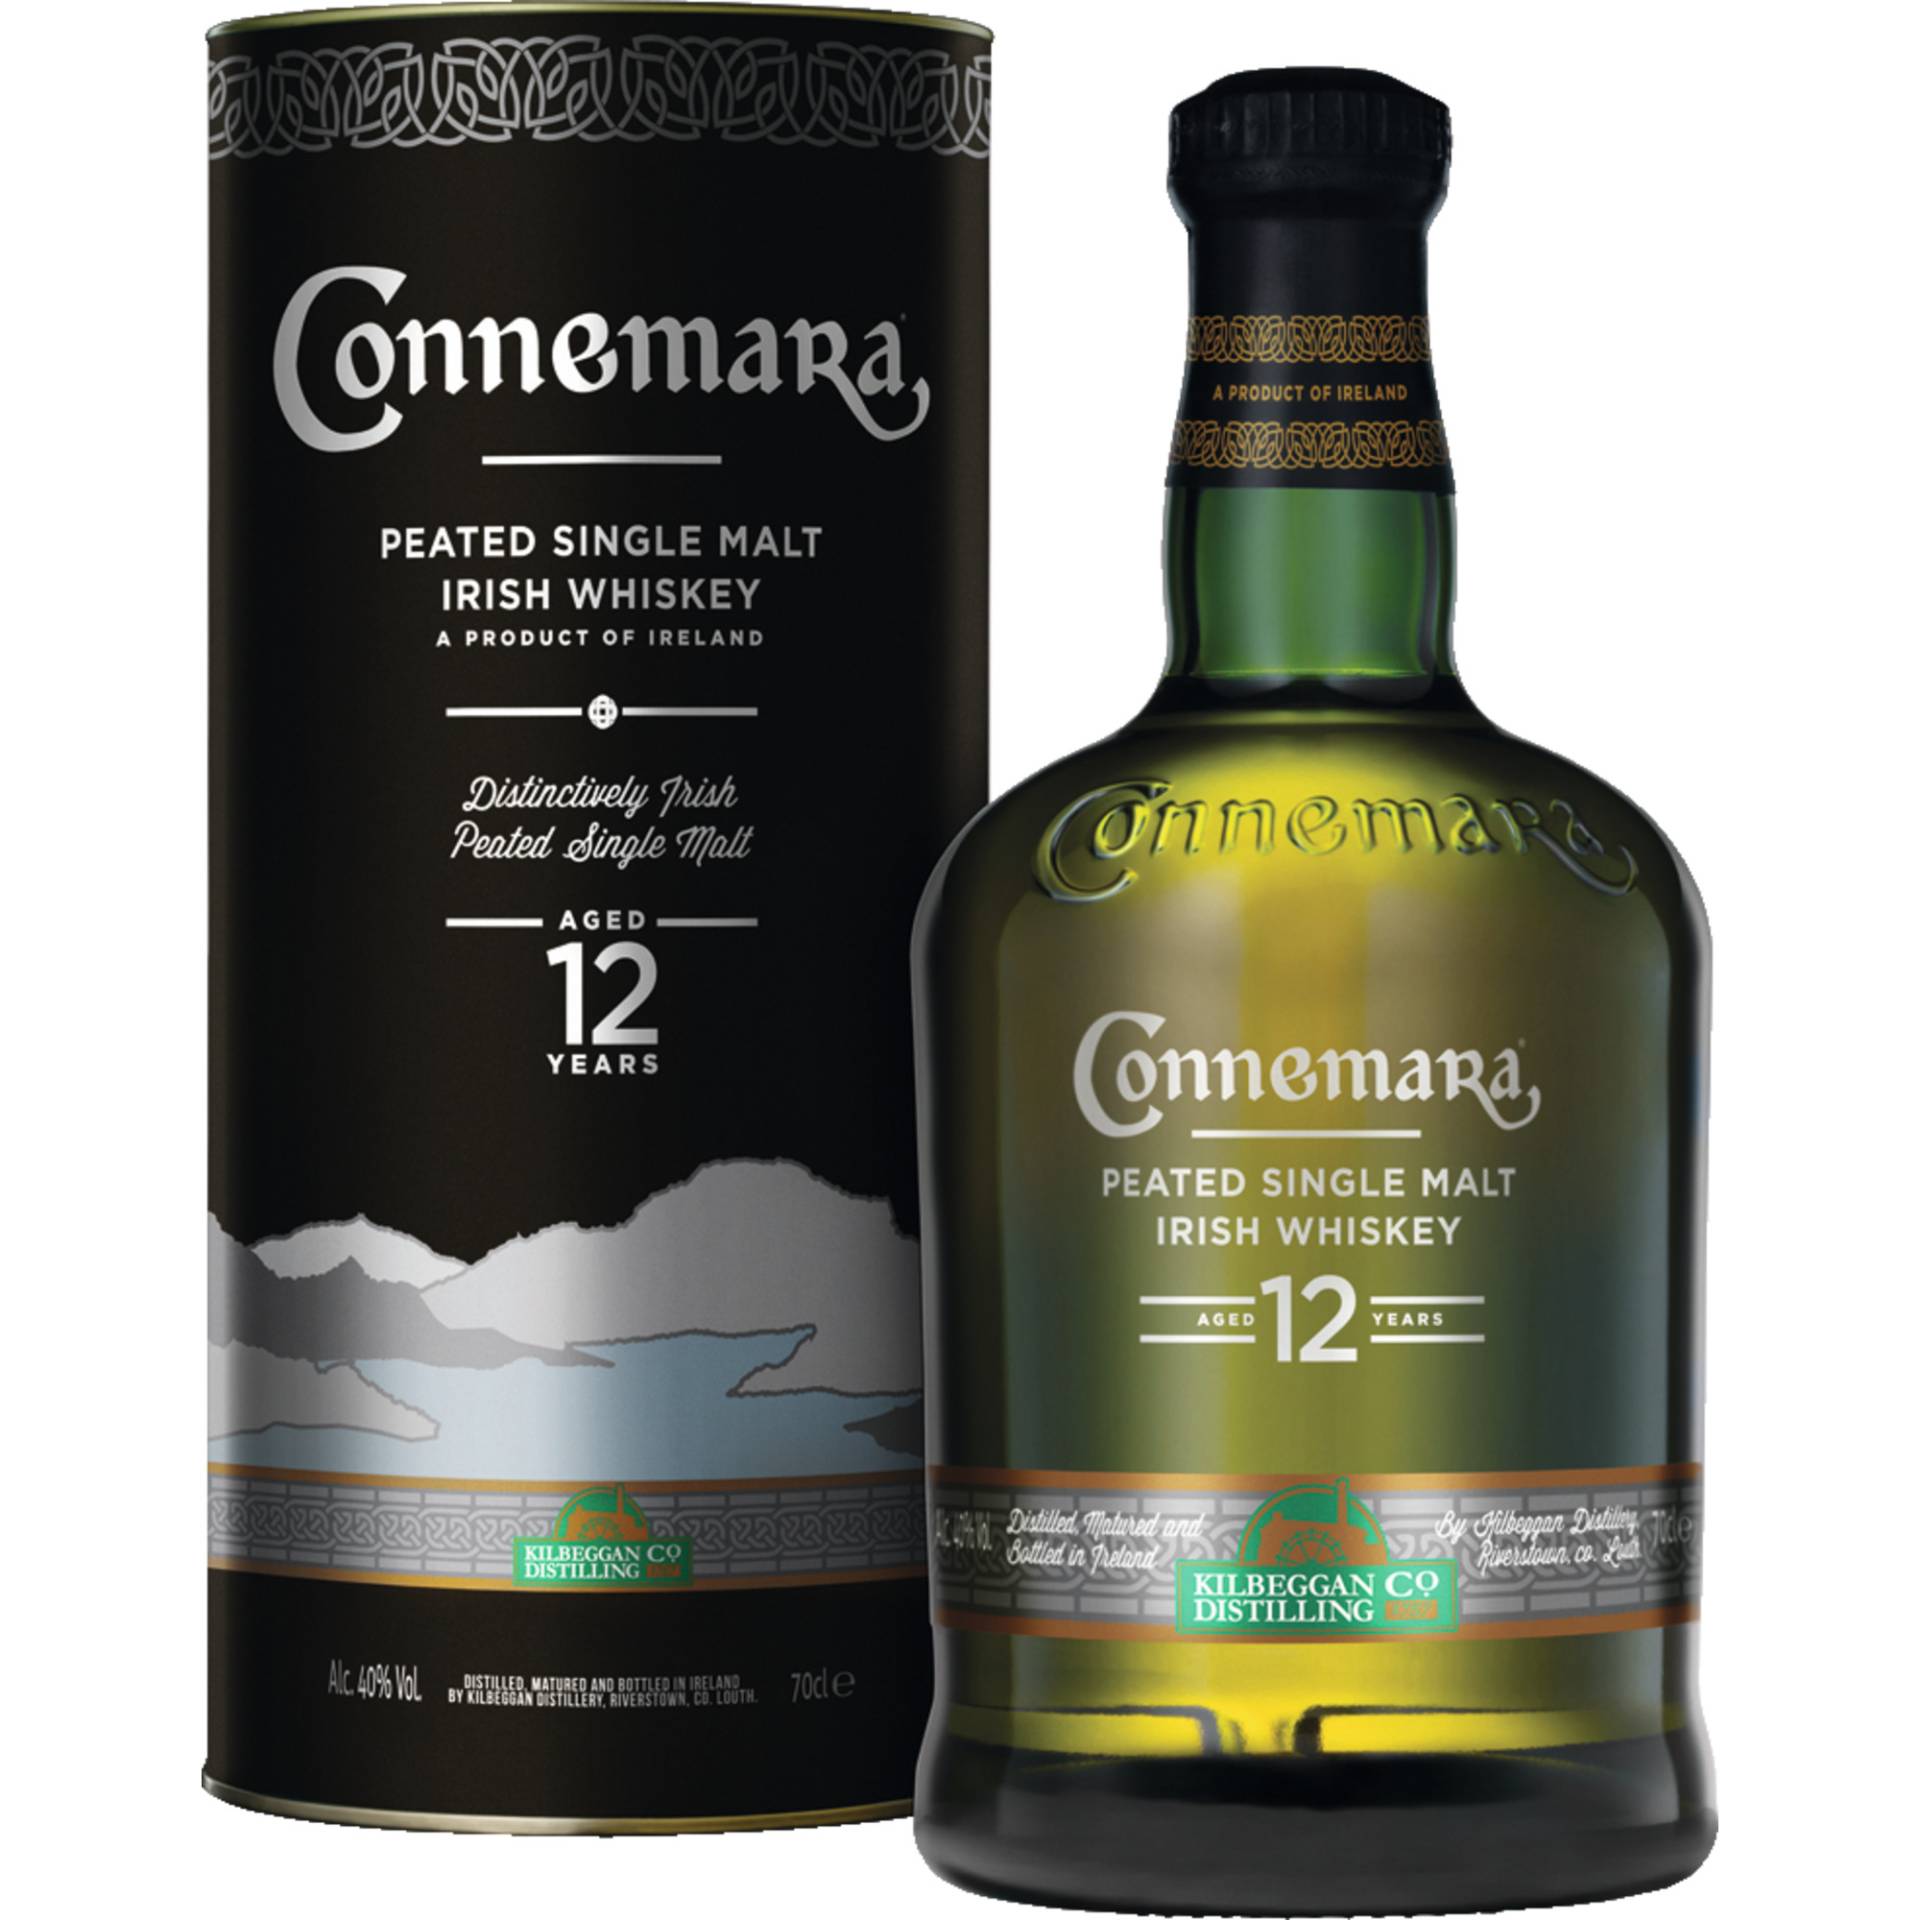 Connemara Peated 12 Years Single Malt, Irish Whiskey, Irland, 0,7 L, 40% Vol., Spirituosen von Cooley Distillery, Dundalk Road, Maddox Garden, Dundalk, County Louth, Ireland